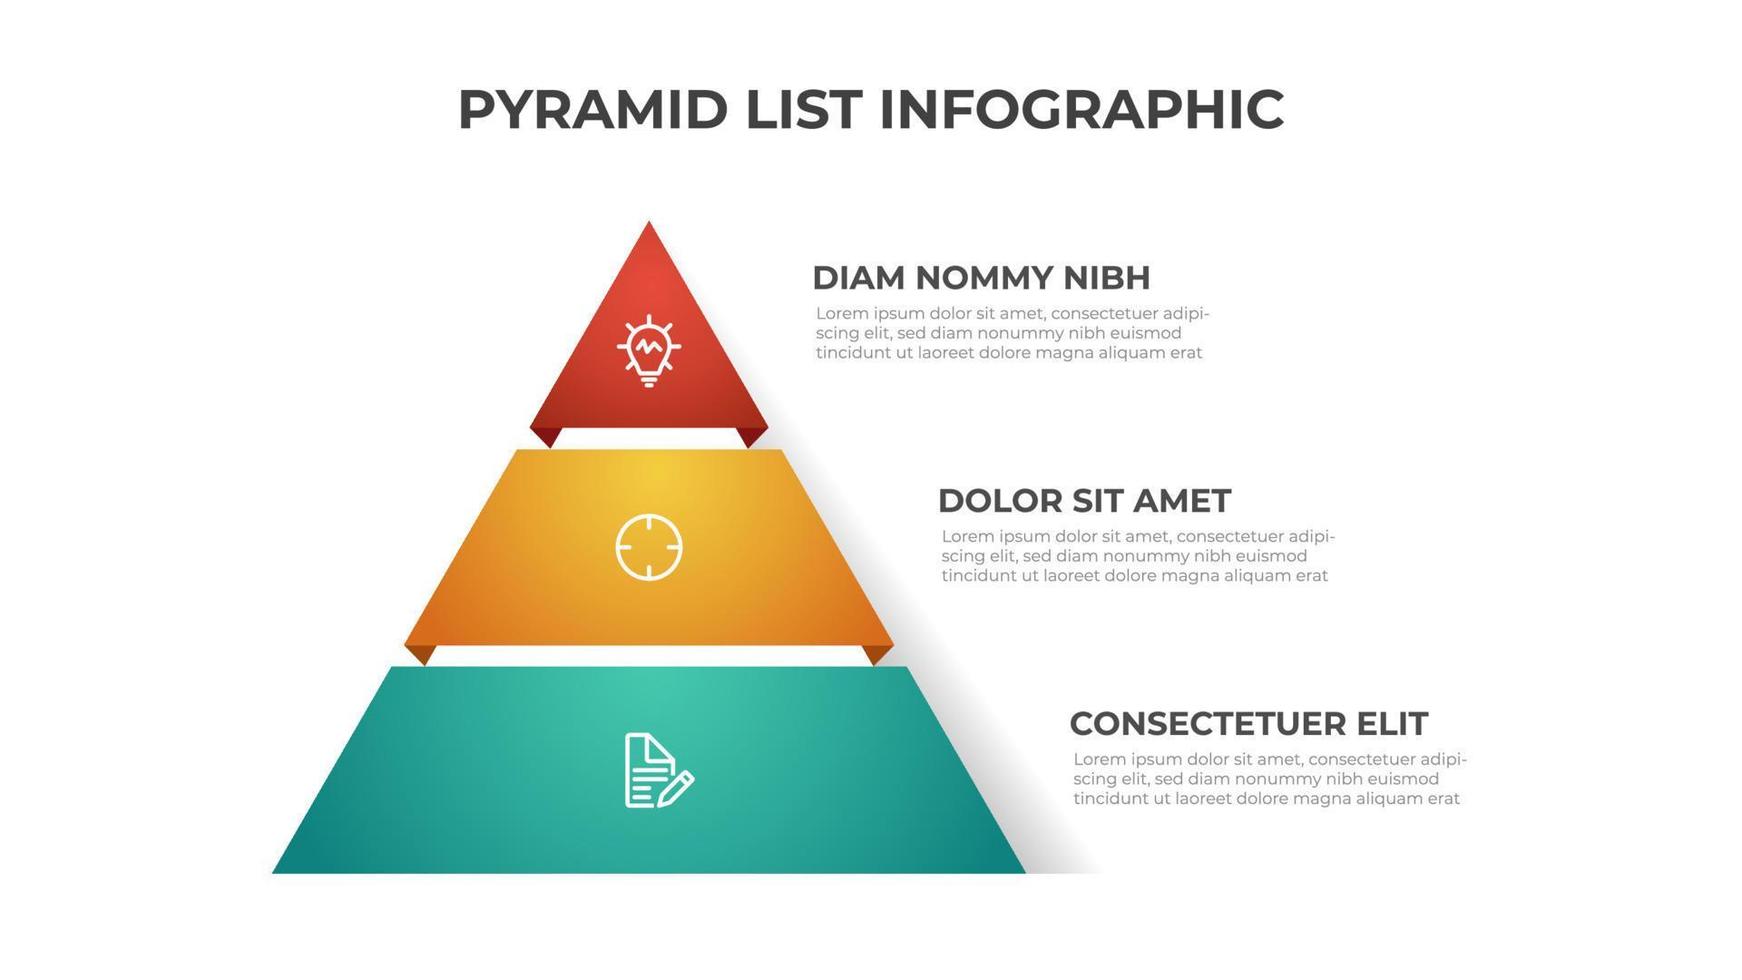 vetor de modelo infográfico de lista de pirâmide com 3 camadas. elemento de layout para apresentação, relatório, banner, etc.